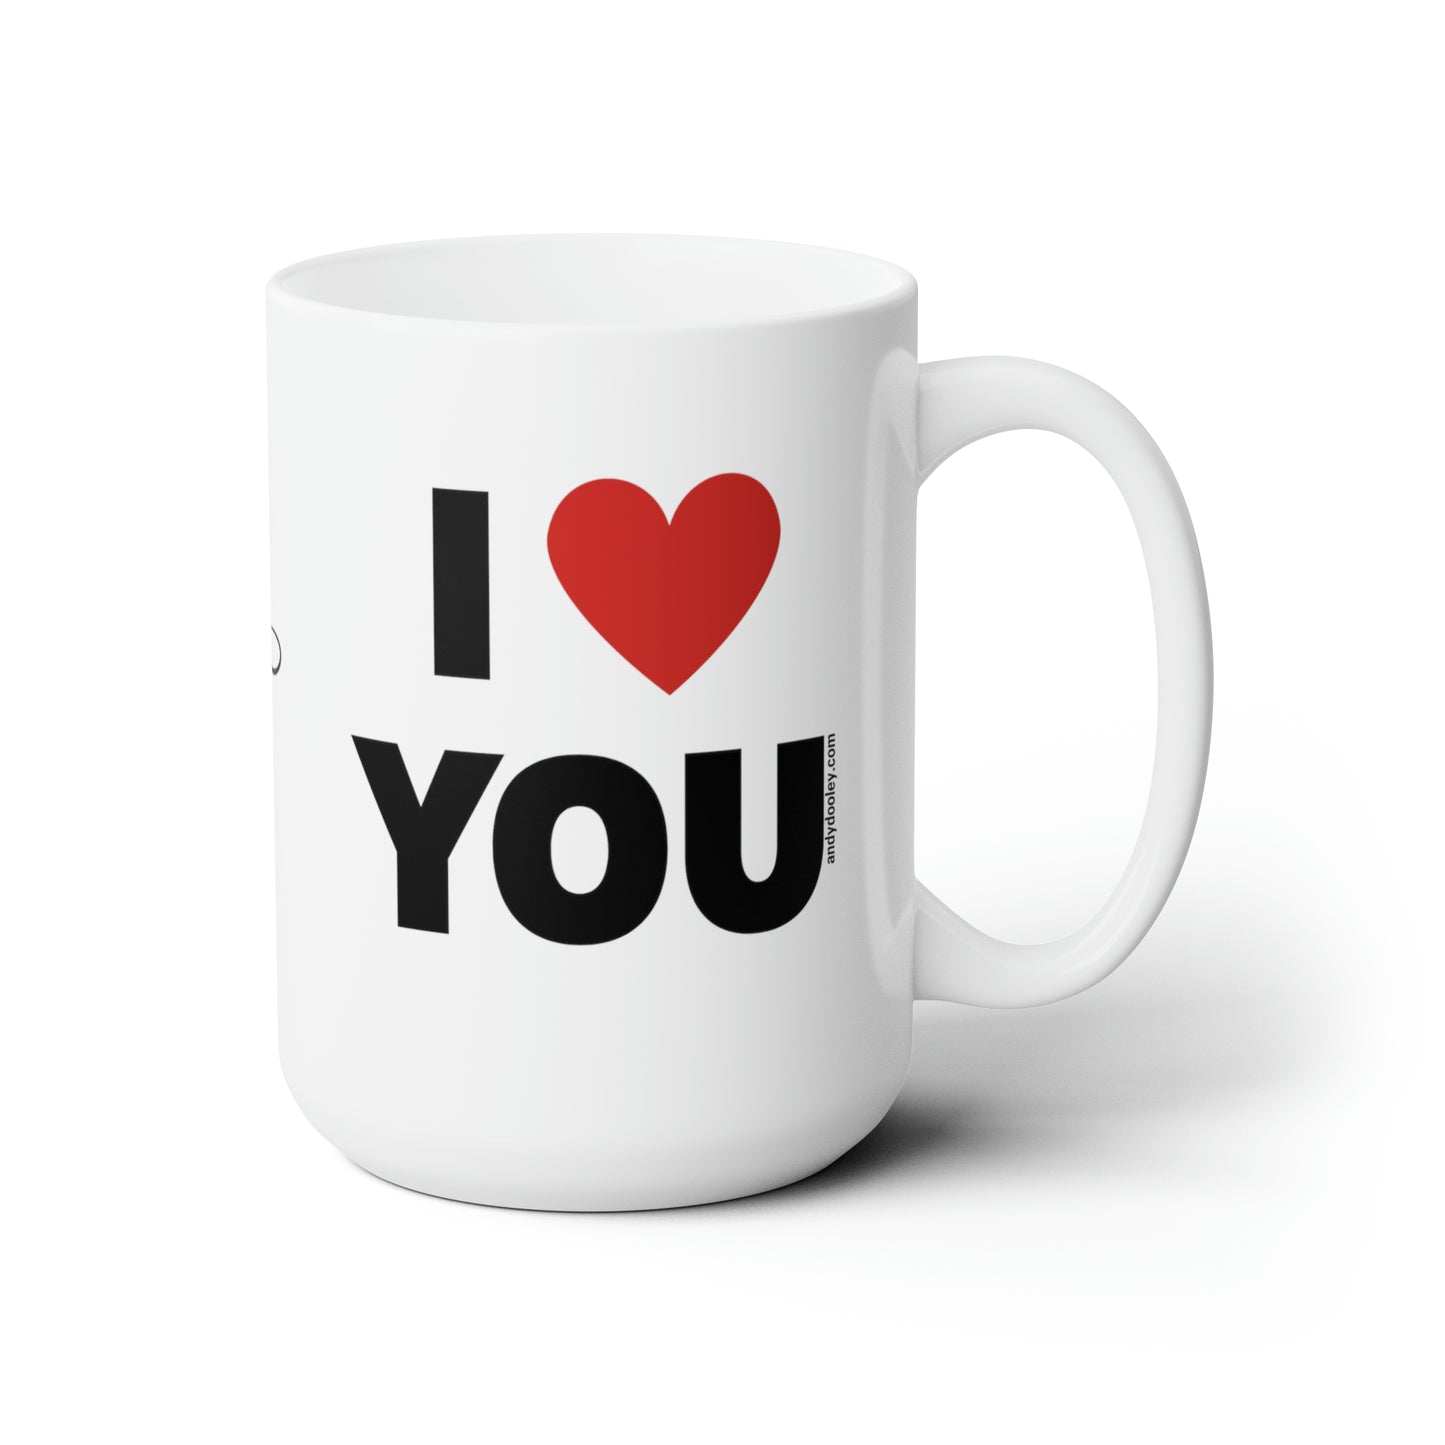 I Love Me/ You (LEFT) Mug 15oz